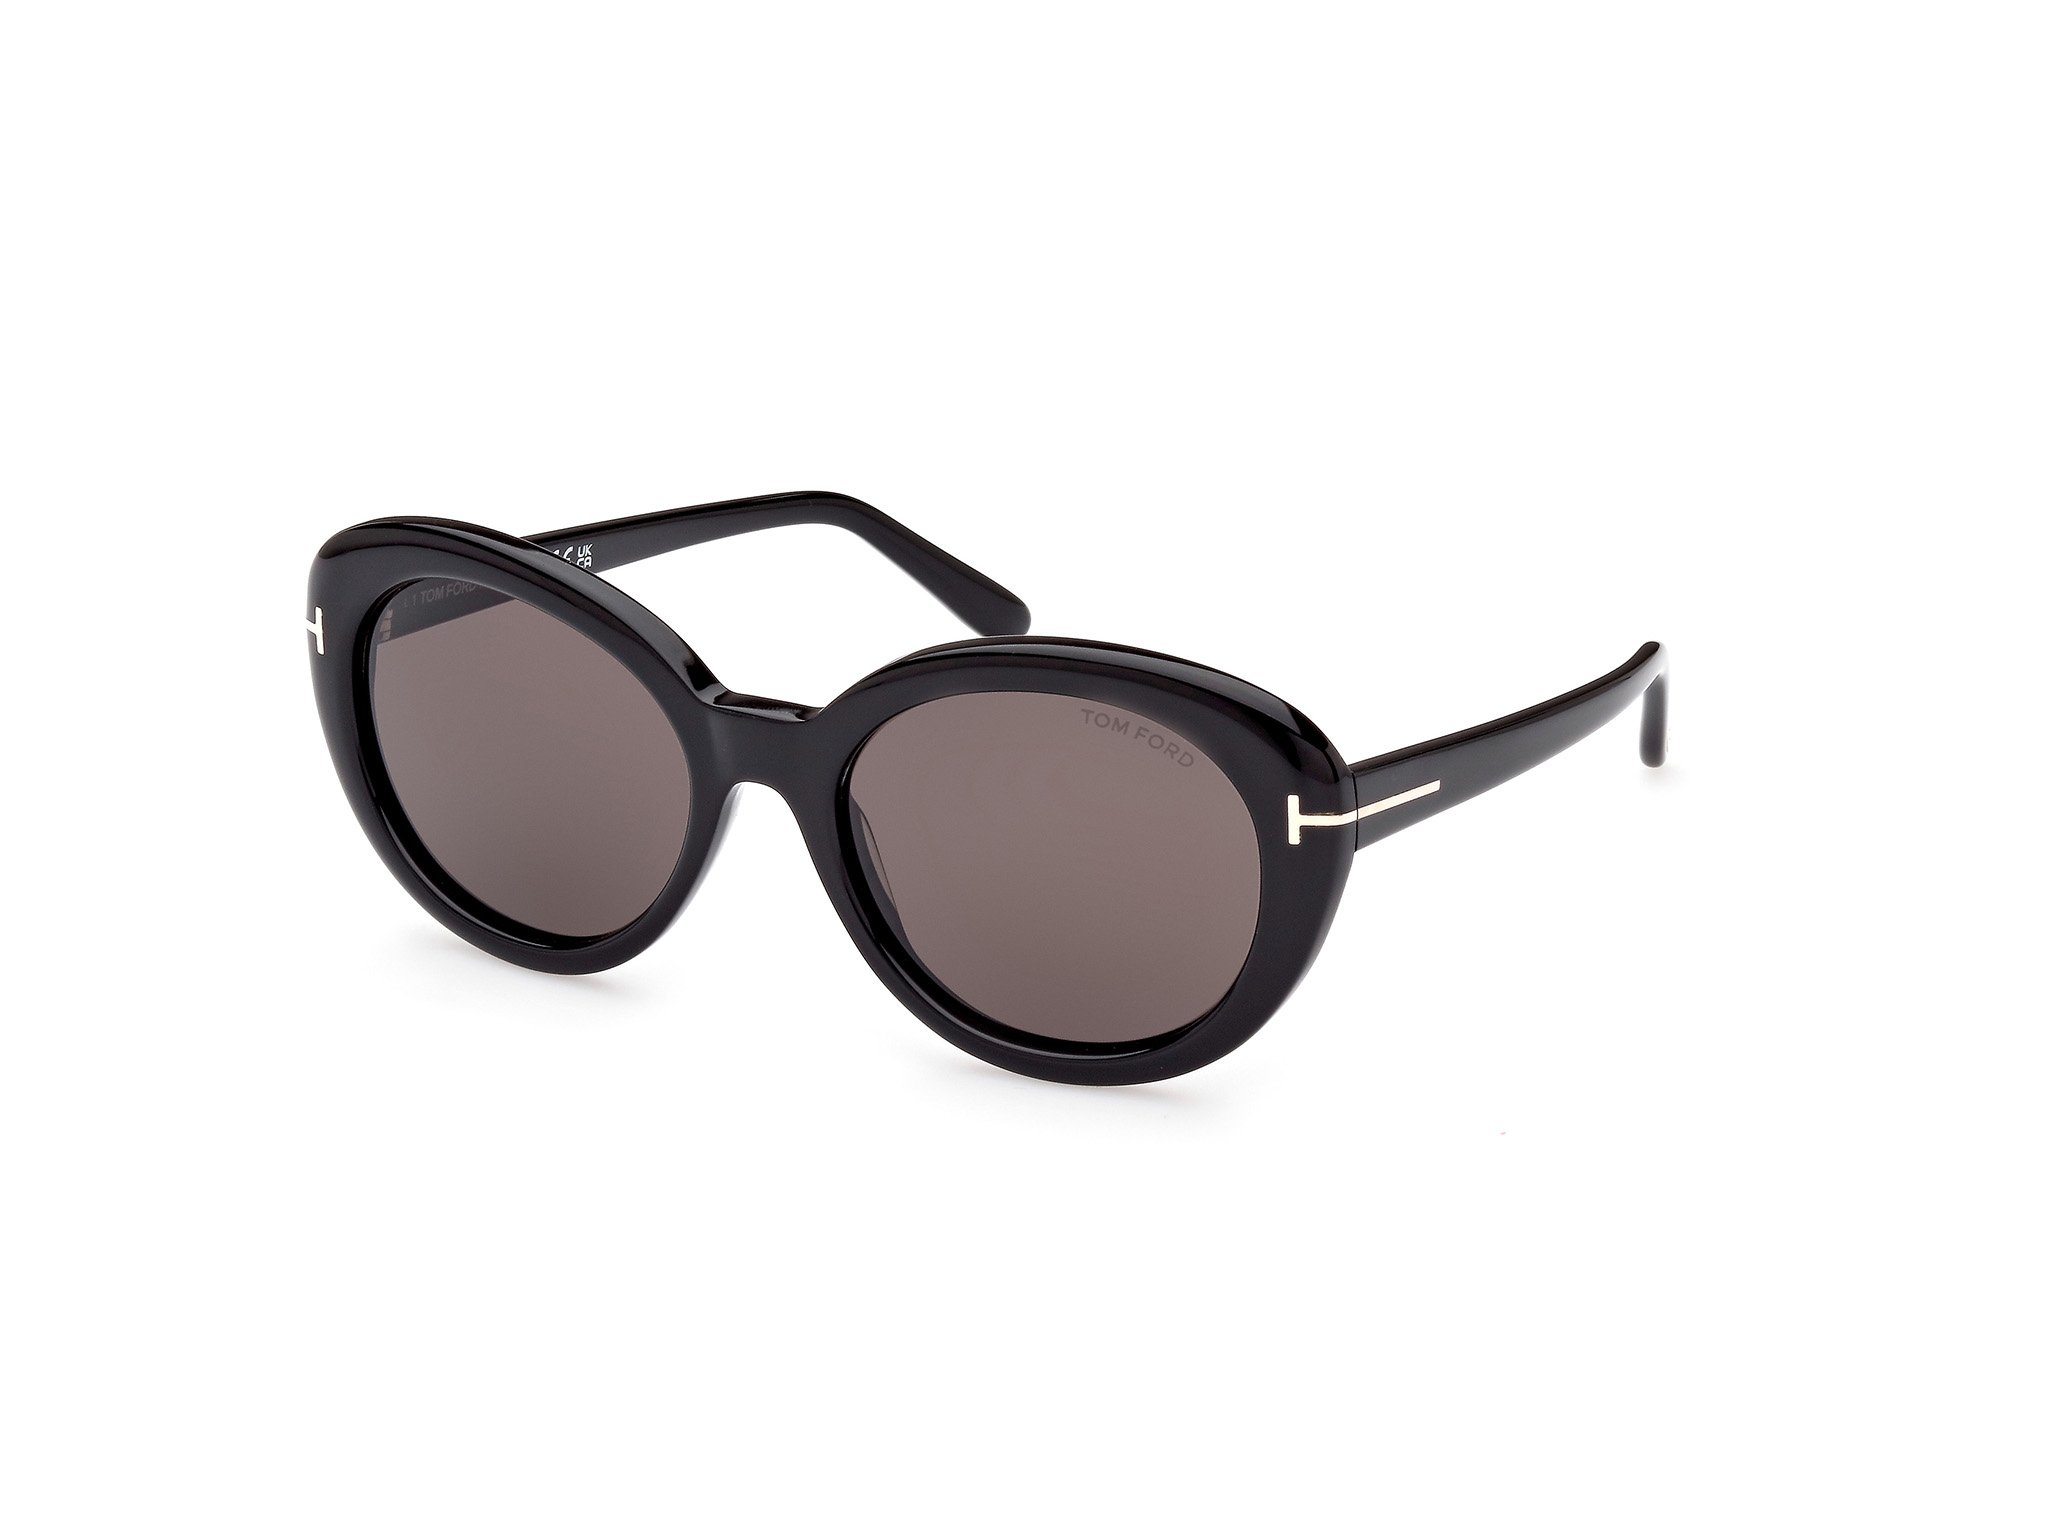 Das Bild zeigt die Sonnenbrille FT1009 der Marke Tom Ford in schwarz von der Seite.